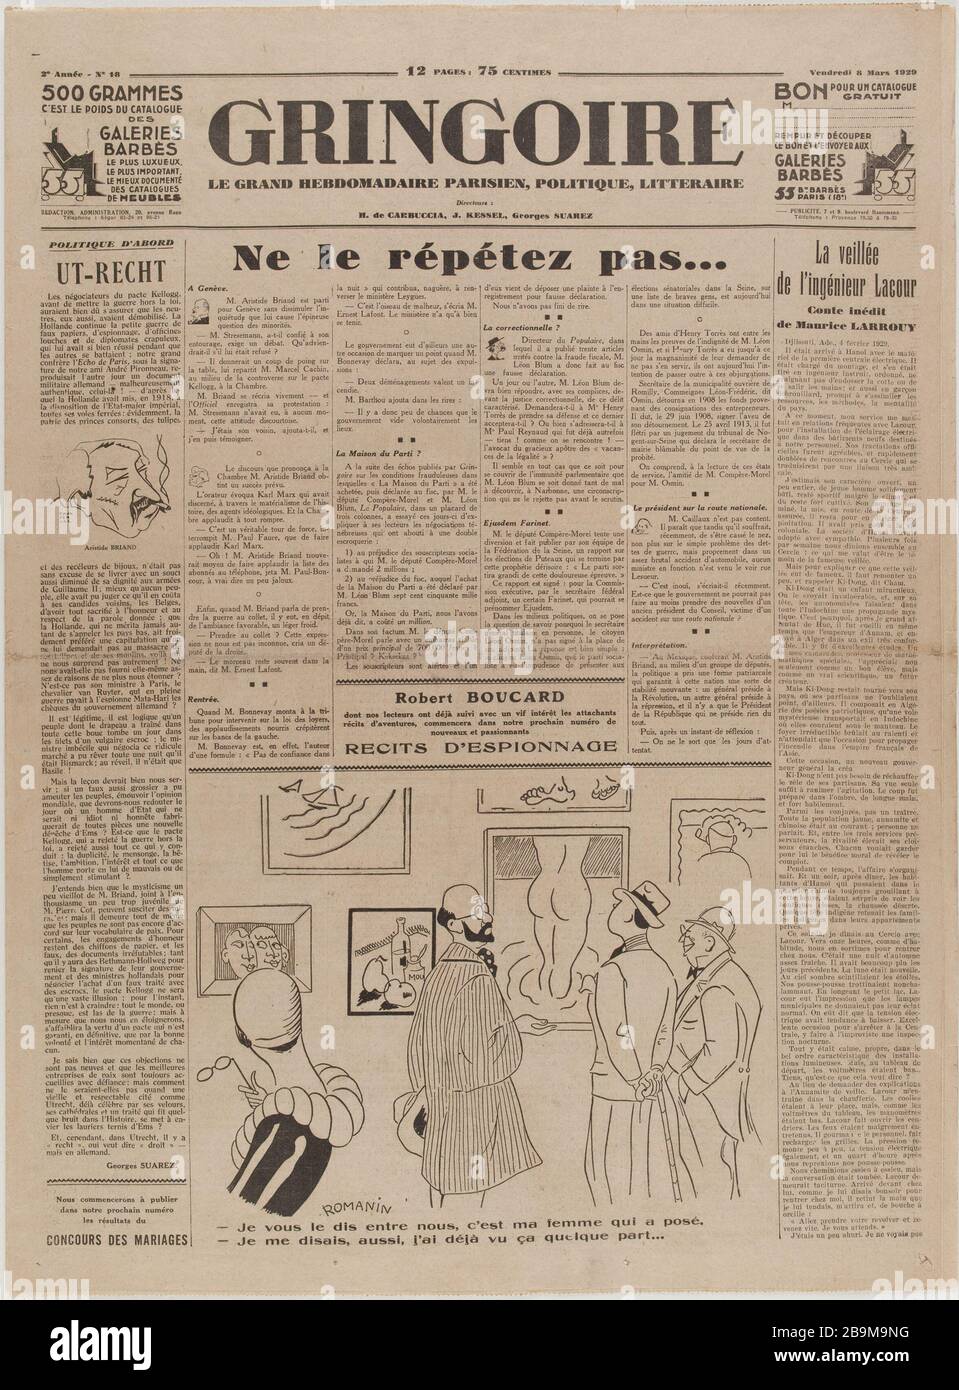 Newspaper 'Gringoire' of March 8, 1929 Journal 'Gringoire' du 8 mars 1929. Papier imprimé, 1929. Musée du Général Leclerc de Hauteclocque et de la Libération de Paris, musée Jean Moulin. Stock Photo